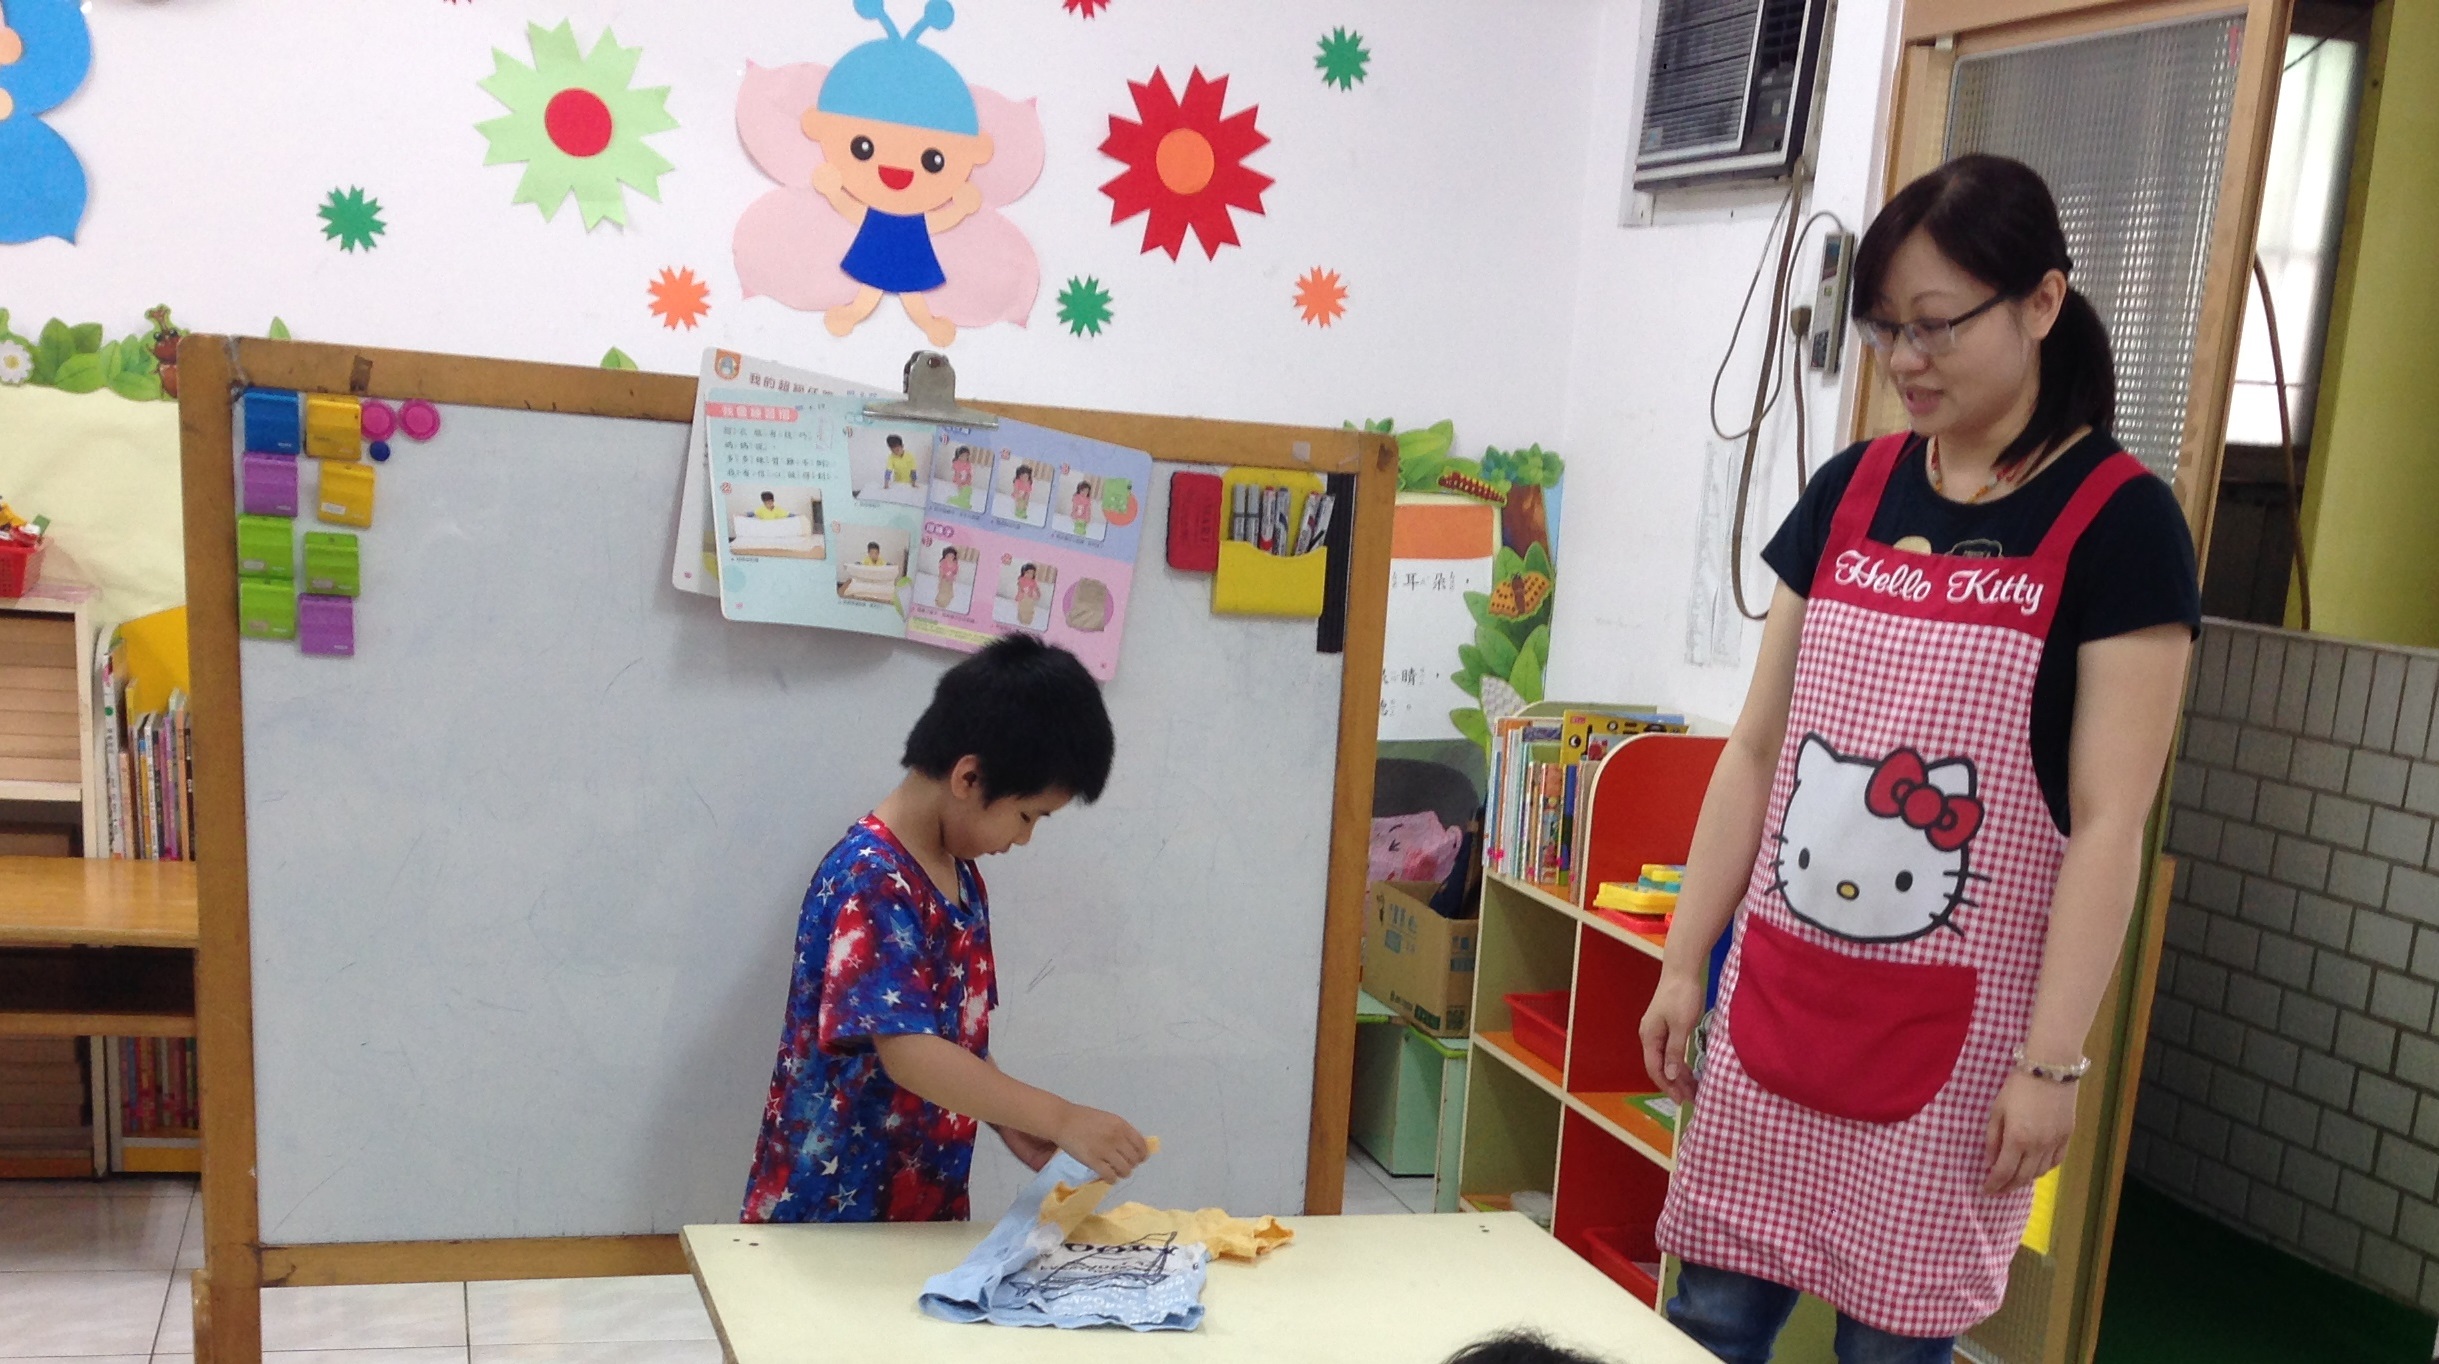 教室裏一位女性教室站在照片右方，左方則為一個小孩正在操作桌上教材